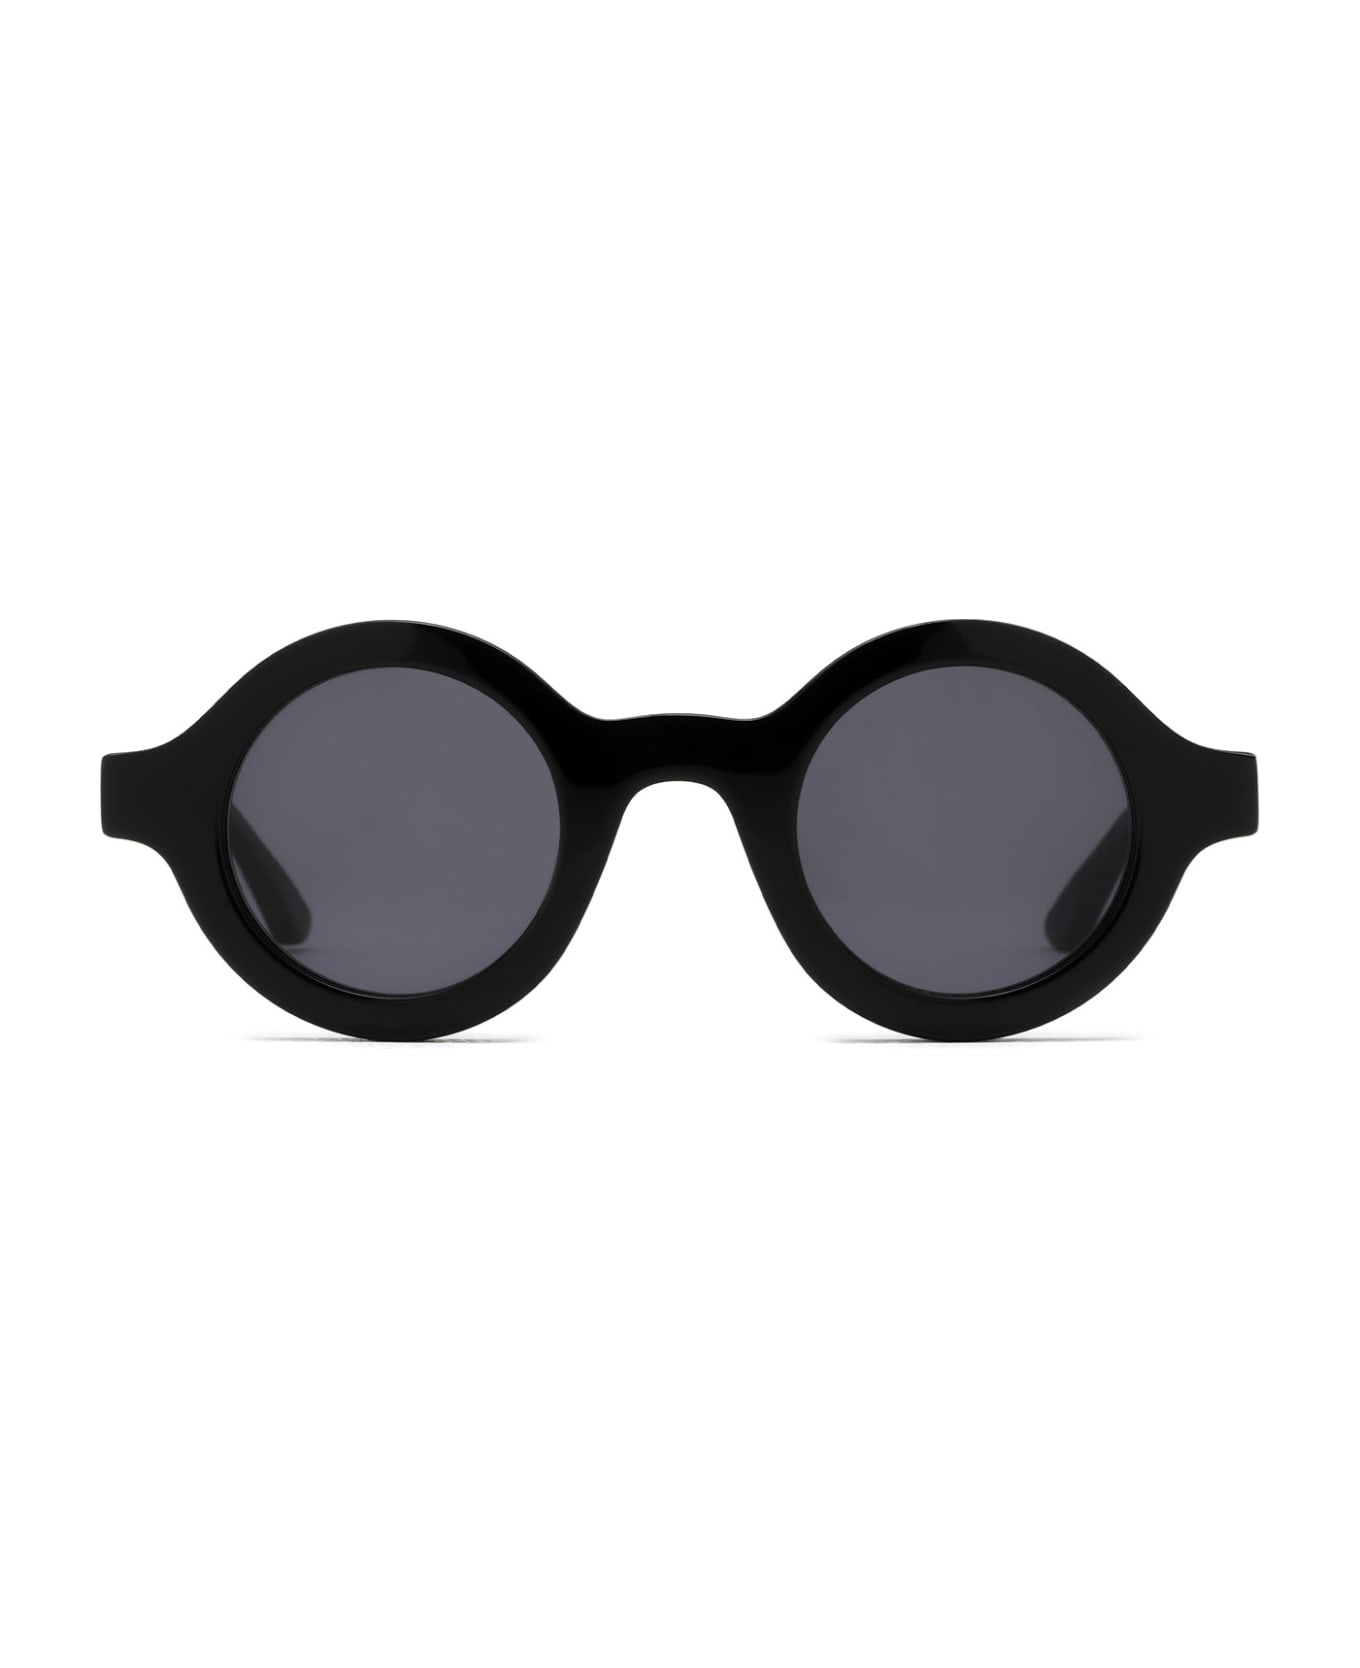 Huma H021 Black Sunglasses - Black サングラス